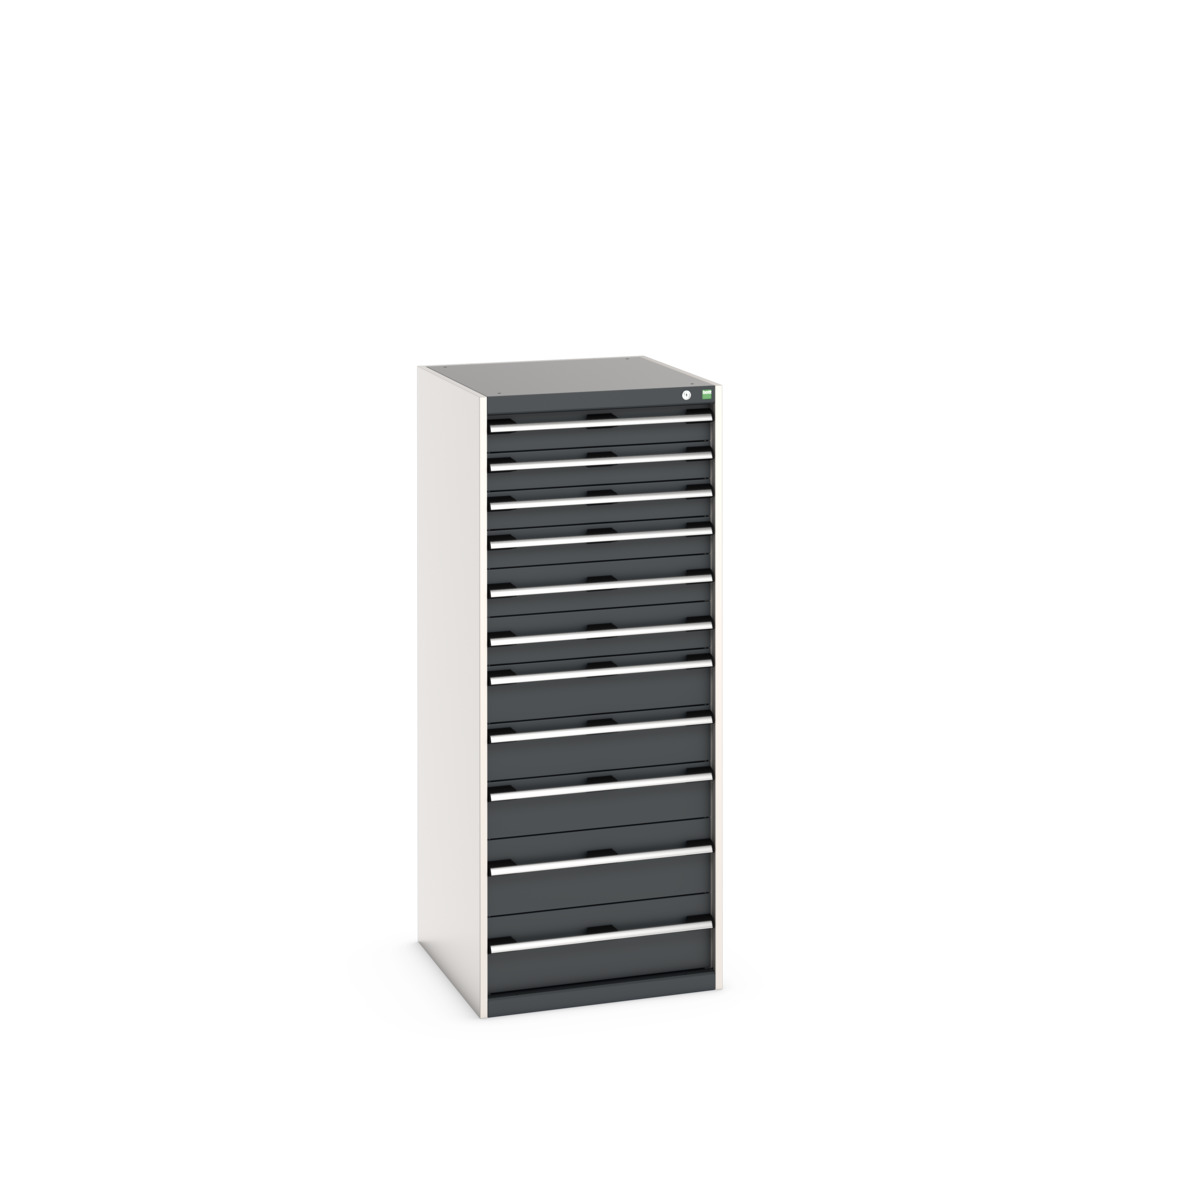 40027047.19V - cubio drawer cabinet